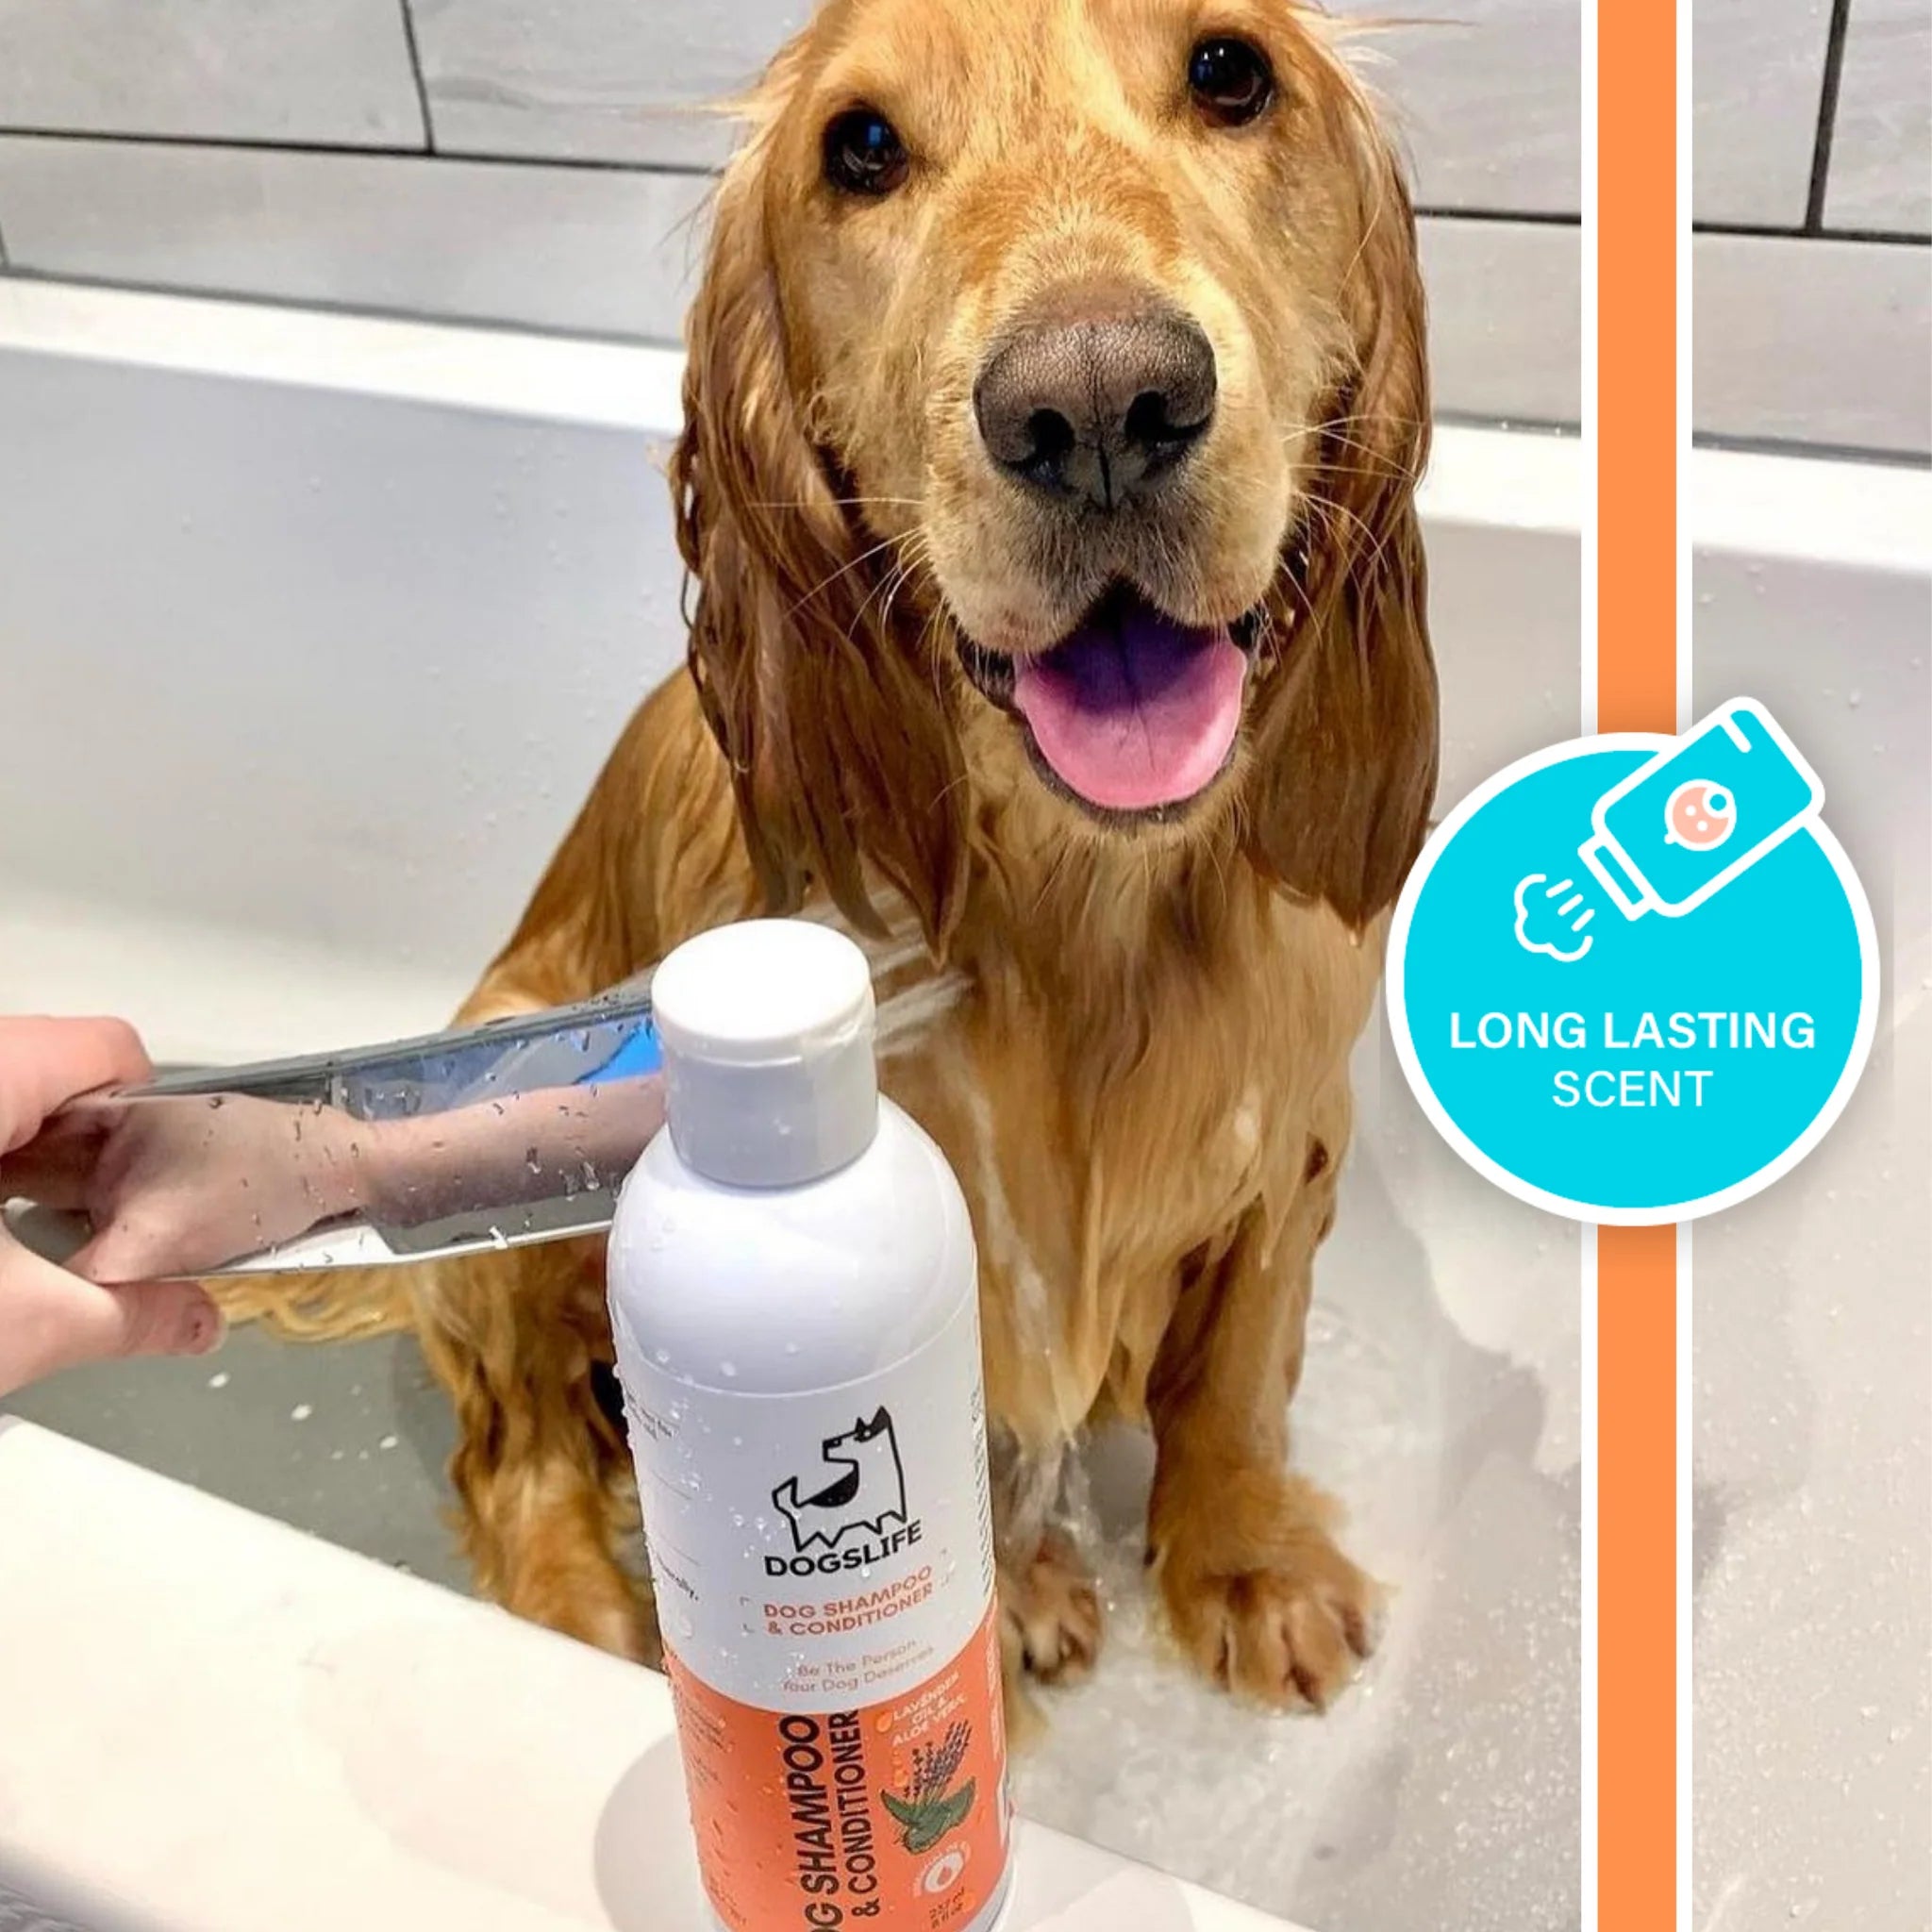 All-In-One Shampoo & Conditioner | Sjampó og næring fyrir hunda